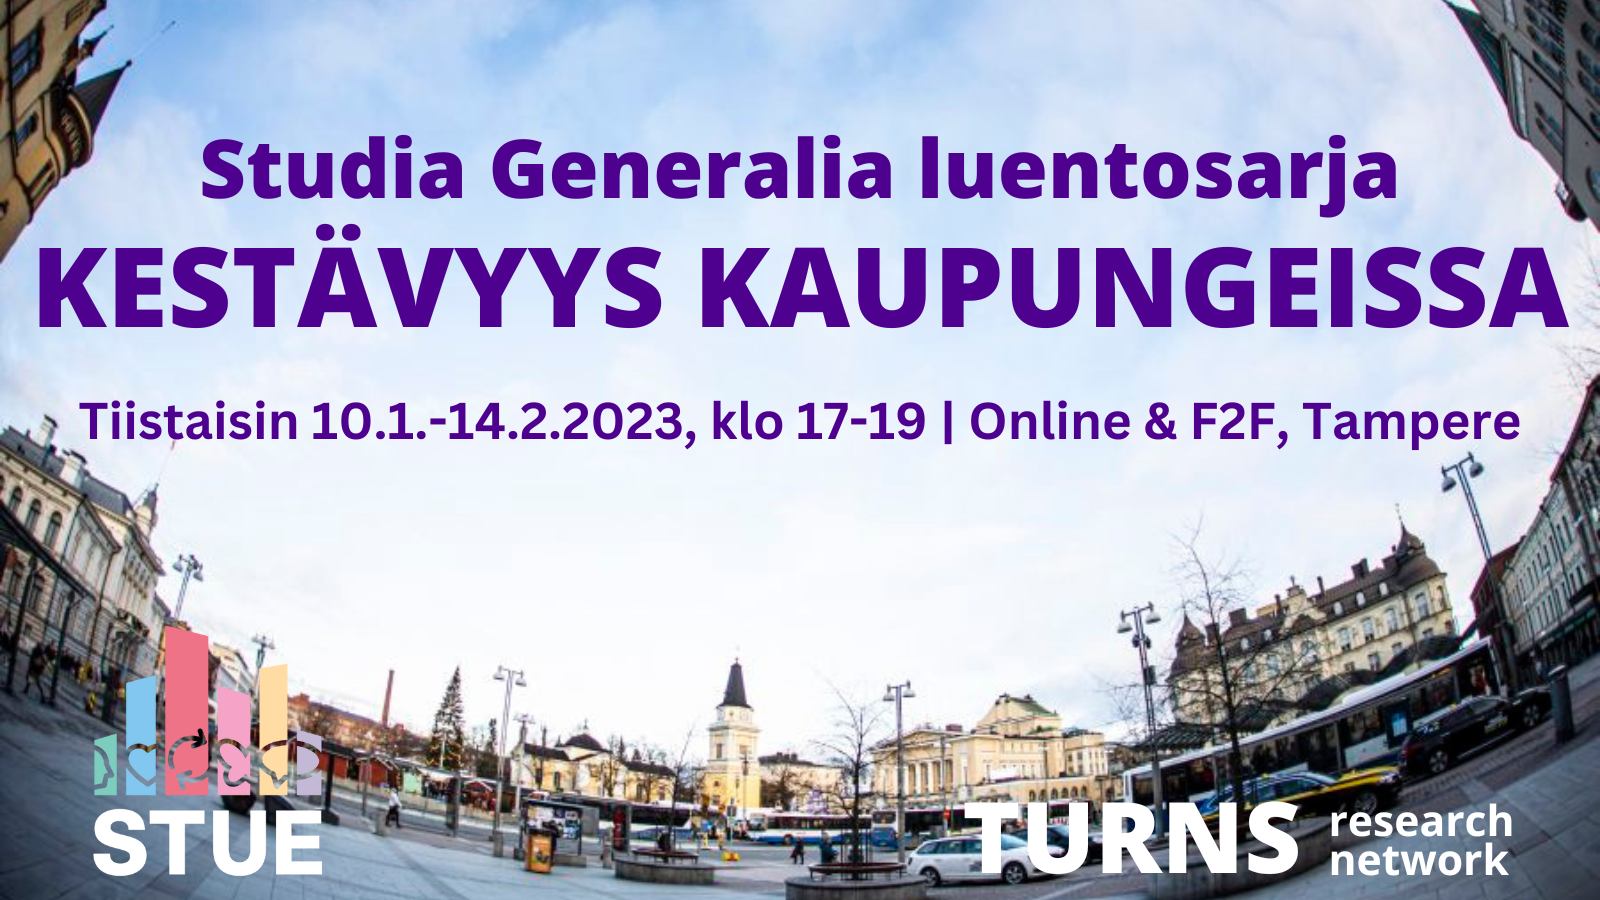 Studia Generalia luentosarja Kestävyys kaupungeissa Tampereen yliopistolla 10.1.-14.2.2023.